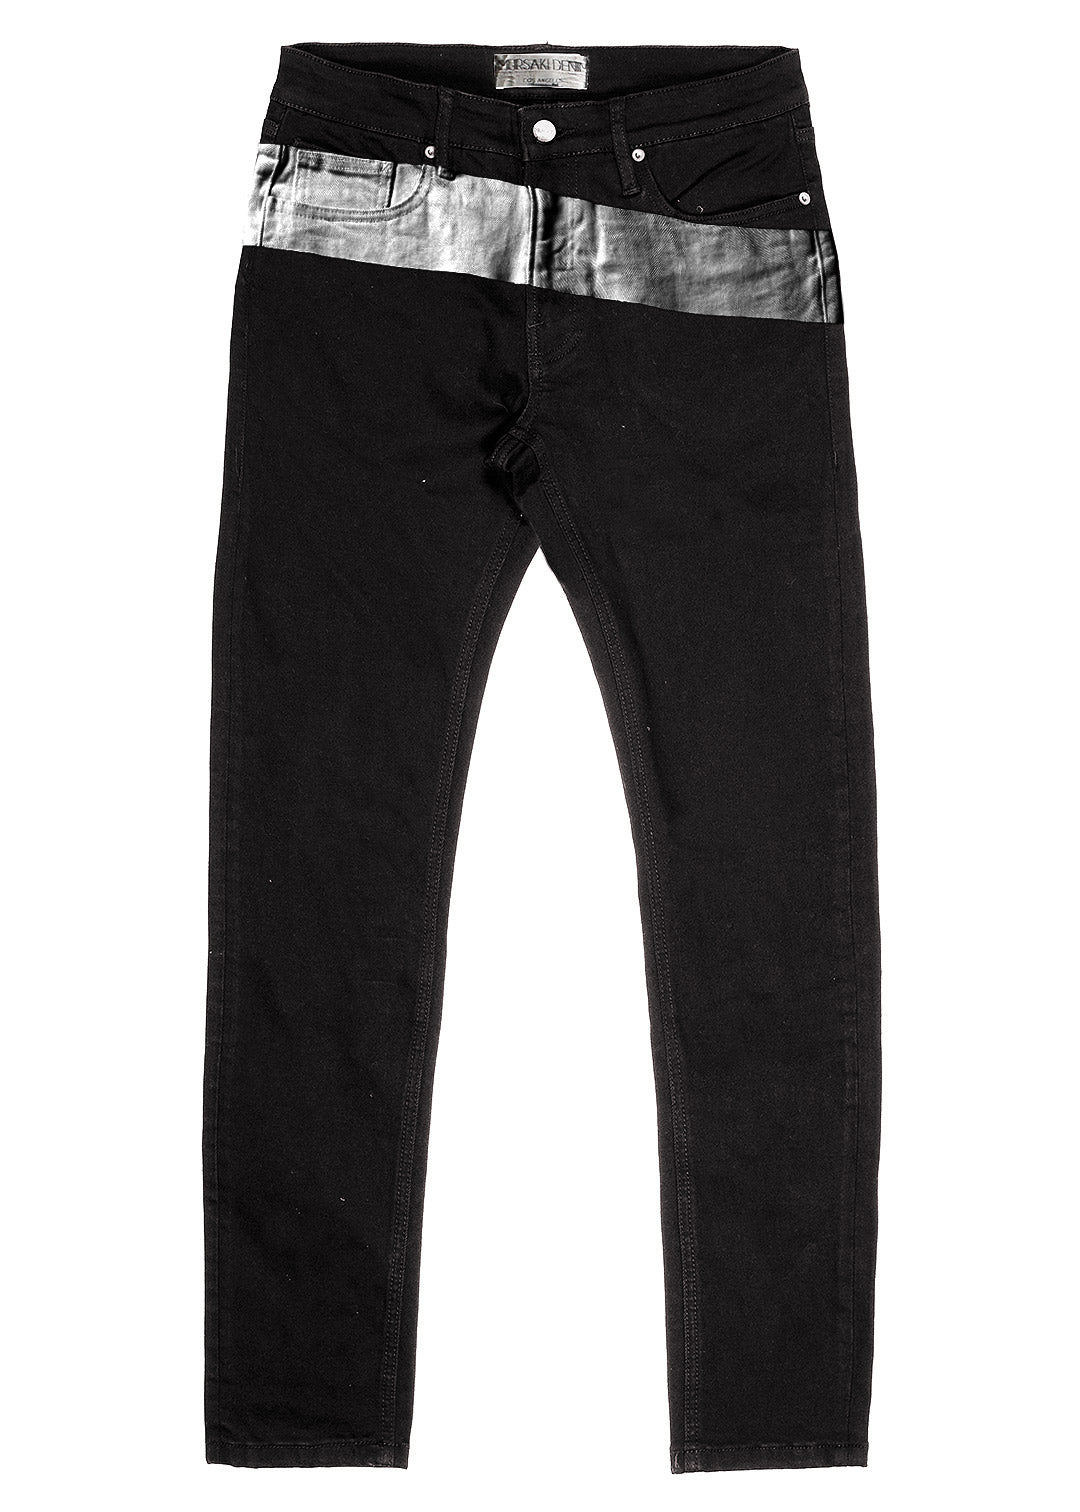 Mursaki OG Stripe Jean - Black/Color